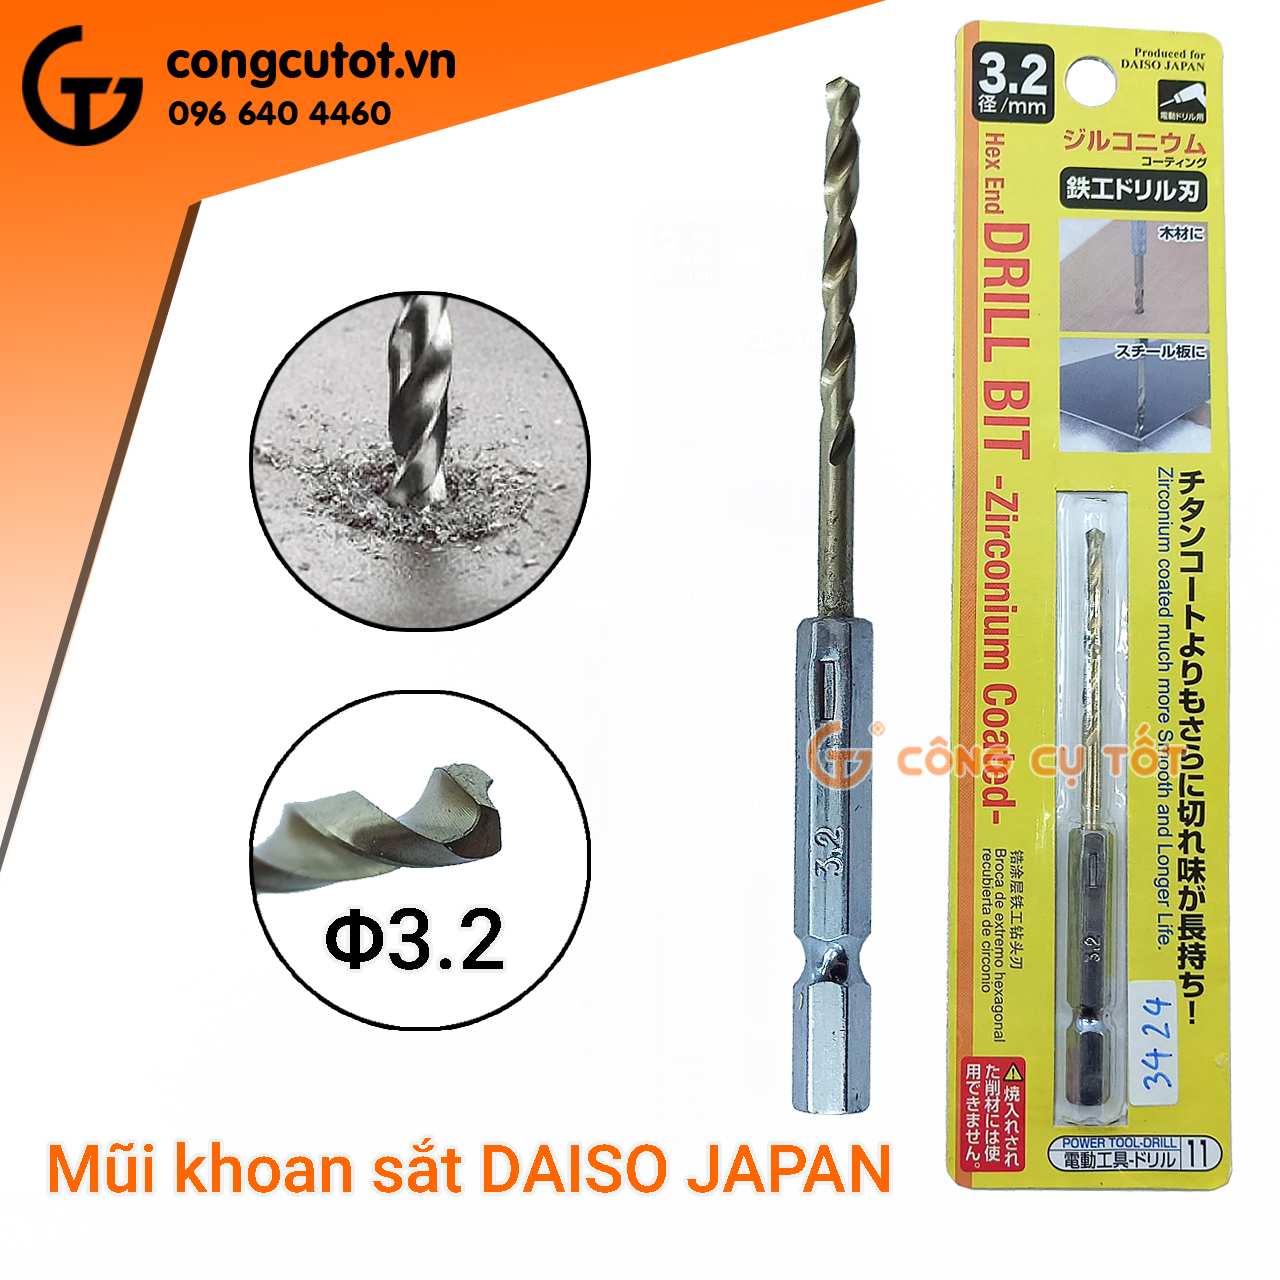 Mũi khoan sắt chuôi lục DAISO JAPAN bằng thép gió M2 mạ kẽm 95mm Φ3.2mm